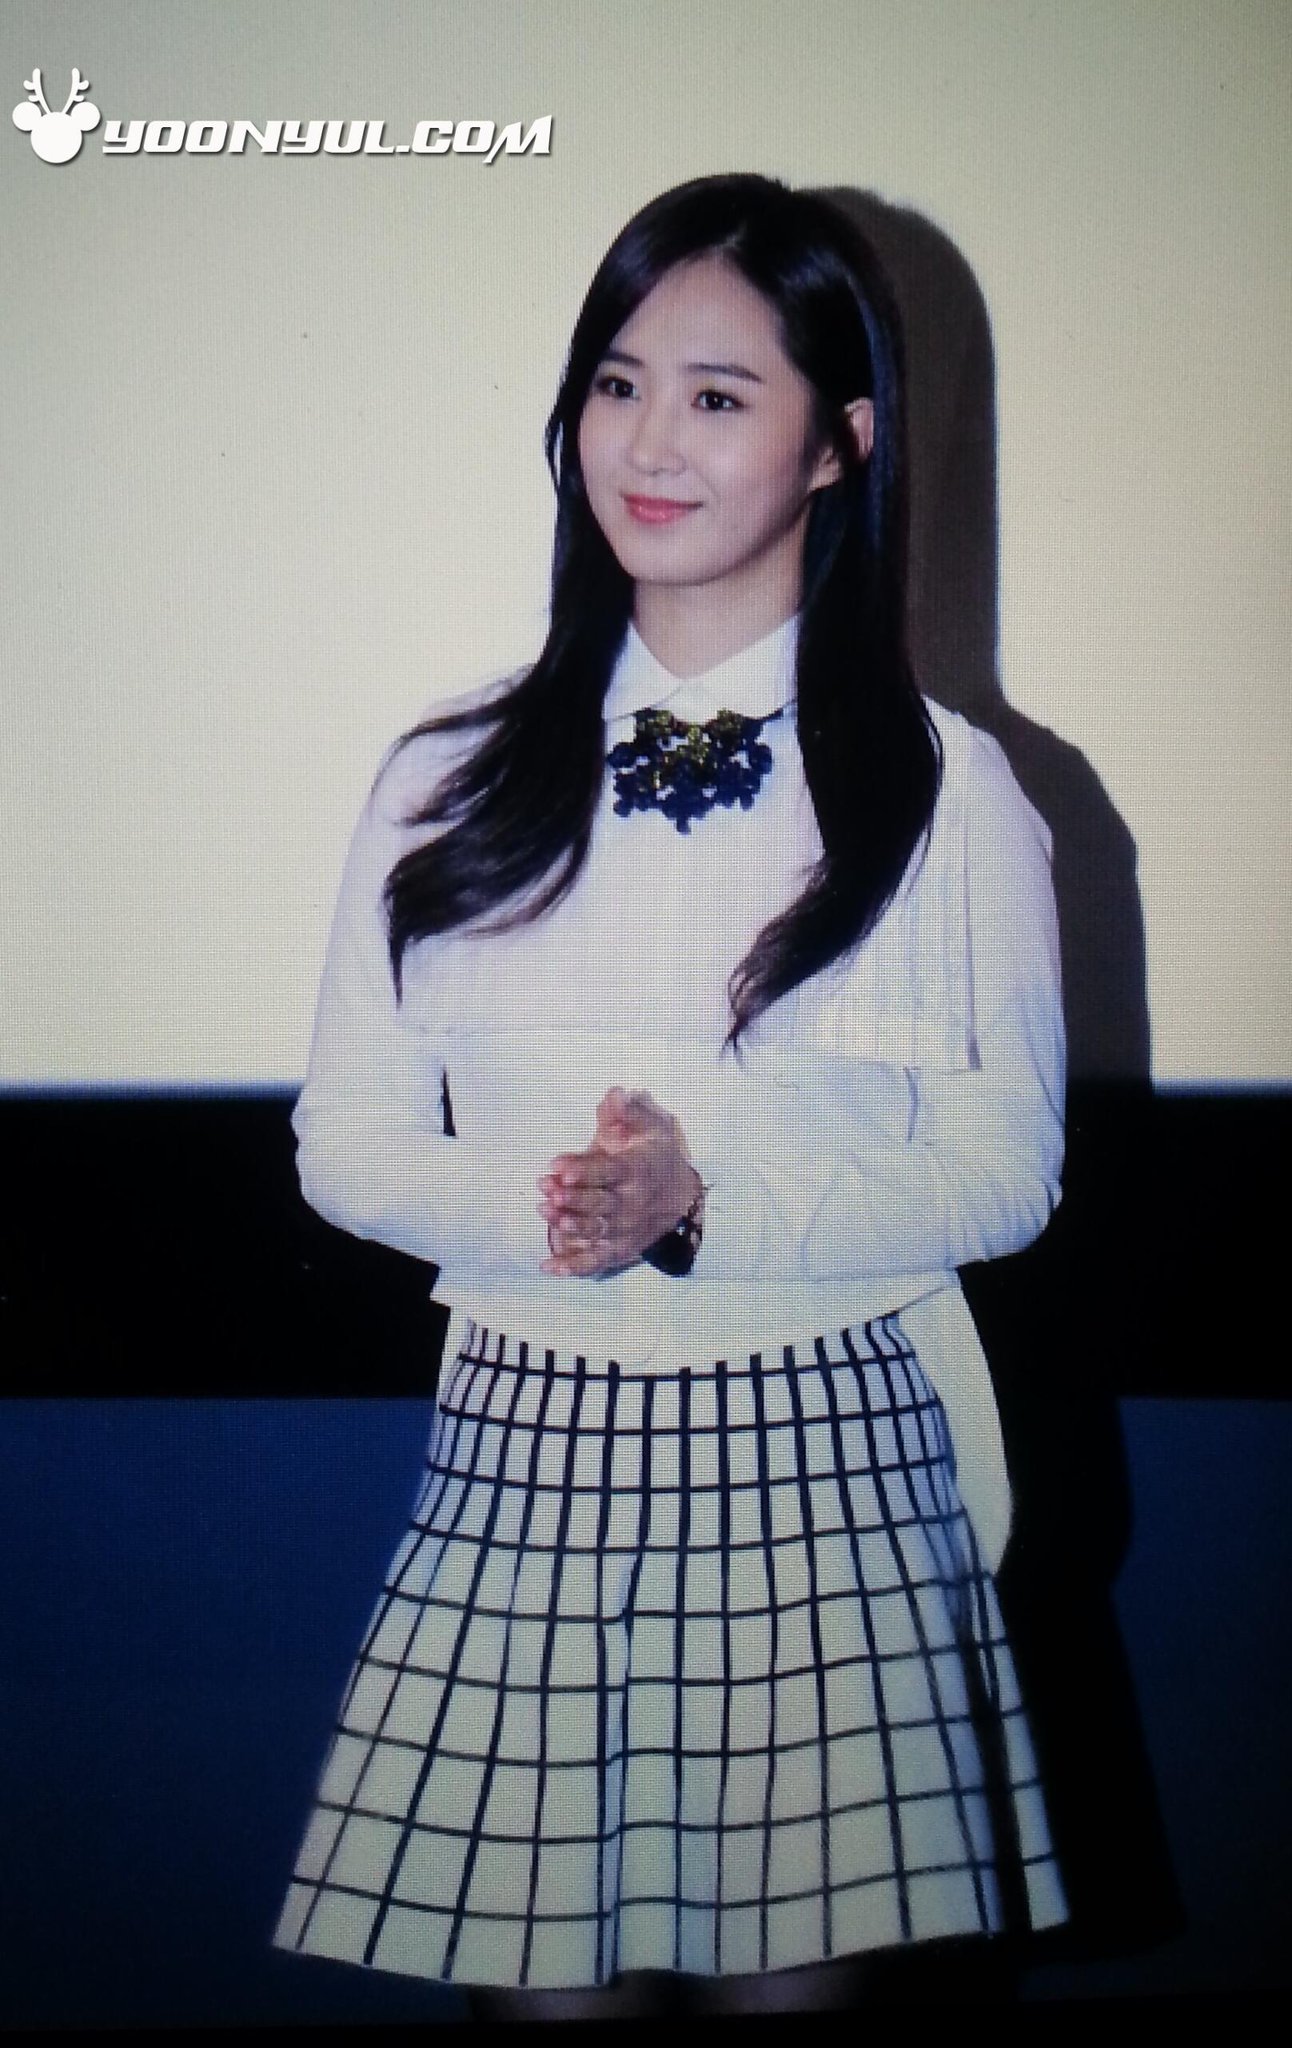 [PIC][07-11-2013]Yuri xuất hiện tại sự kiện "Lotte Cinema" Stage Greeting vào chiều nay + Selca của cô cùng các diễn viên khác BYeKiUyCYAA_Cy3